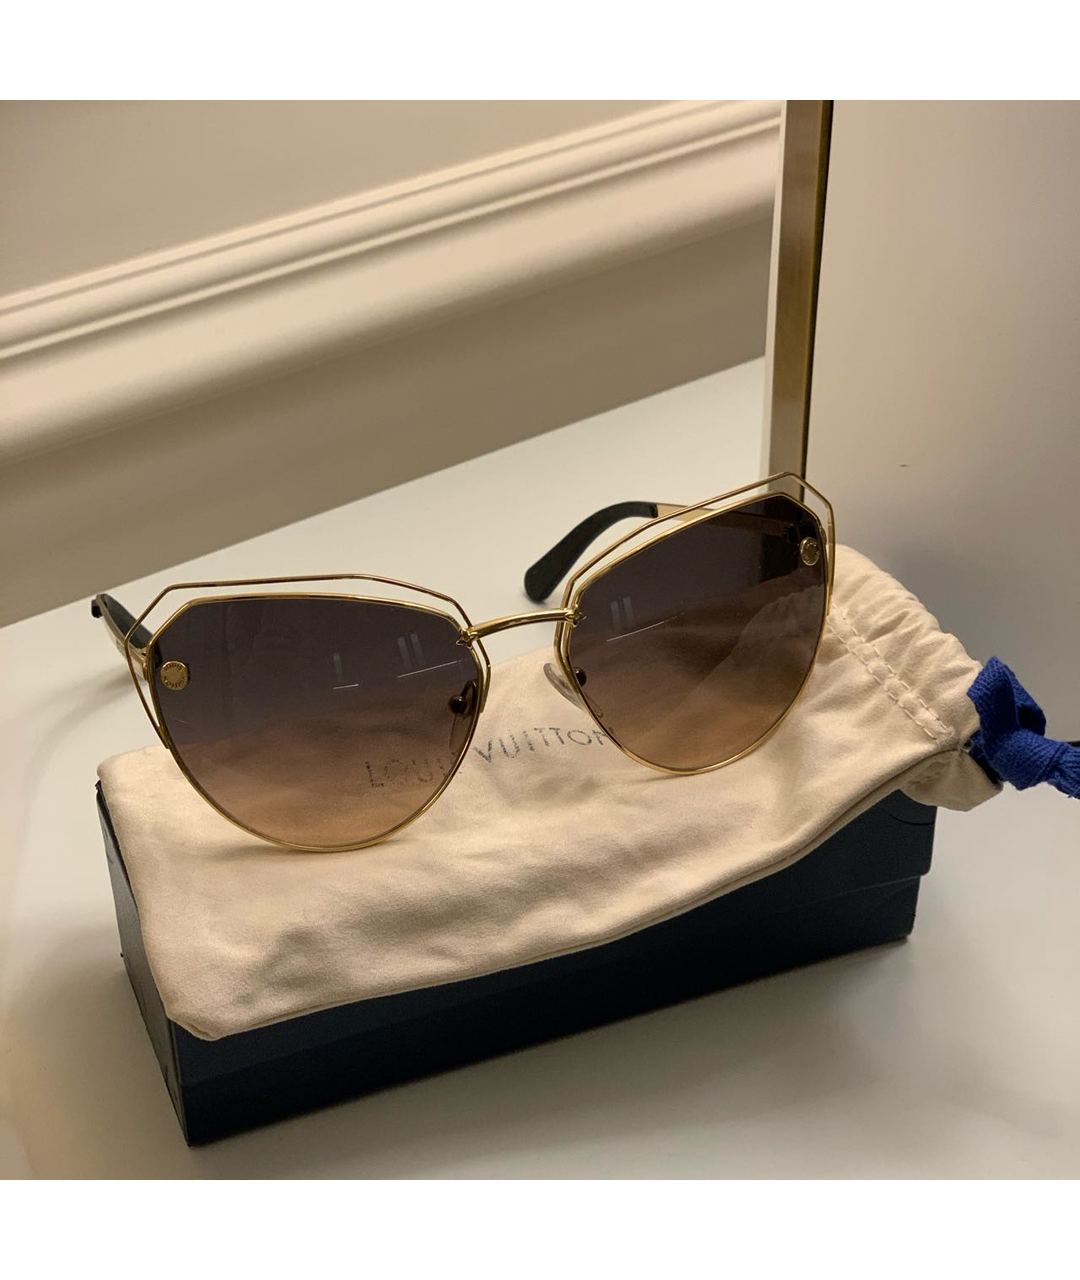 LOUIS VUITTON PRE-OWNED Коричневые металлические солнцезащитные очки, фото 2